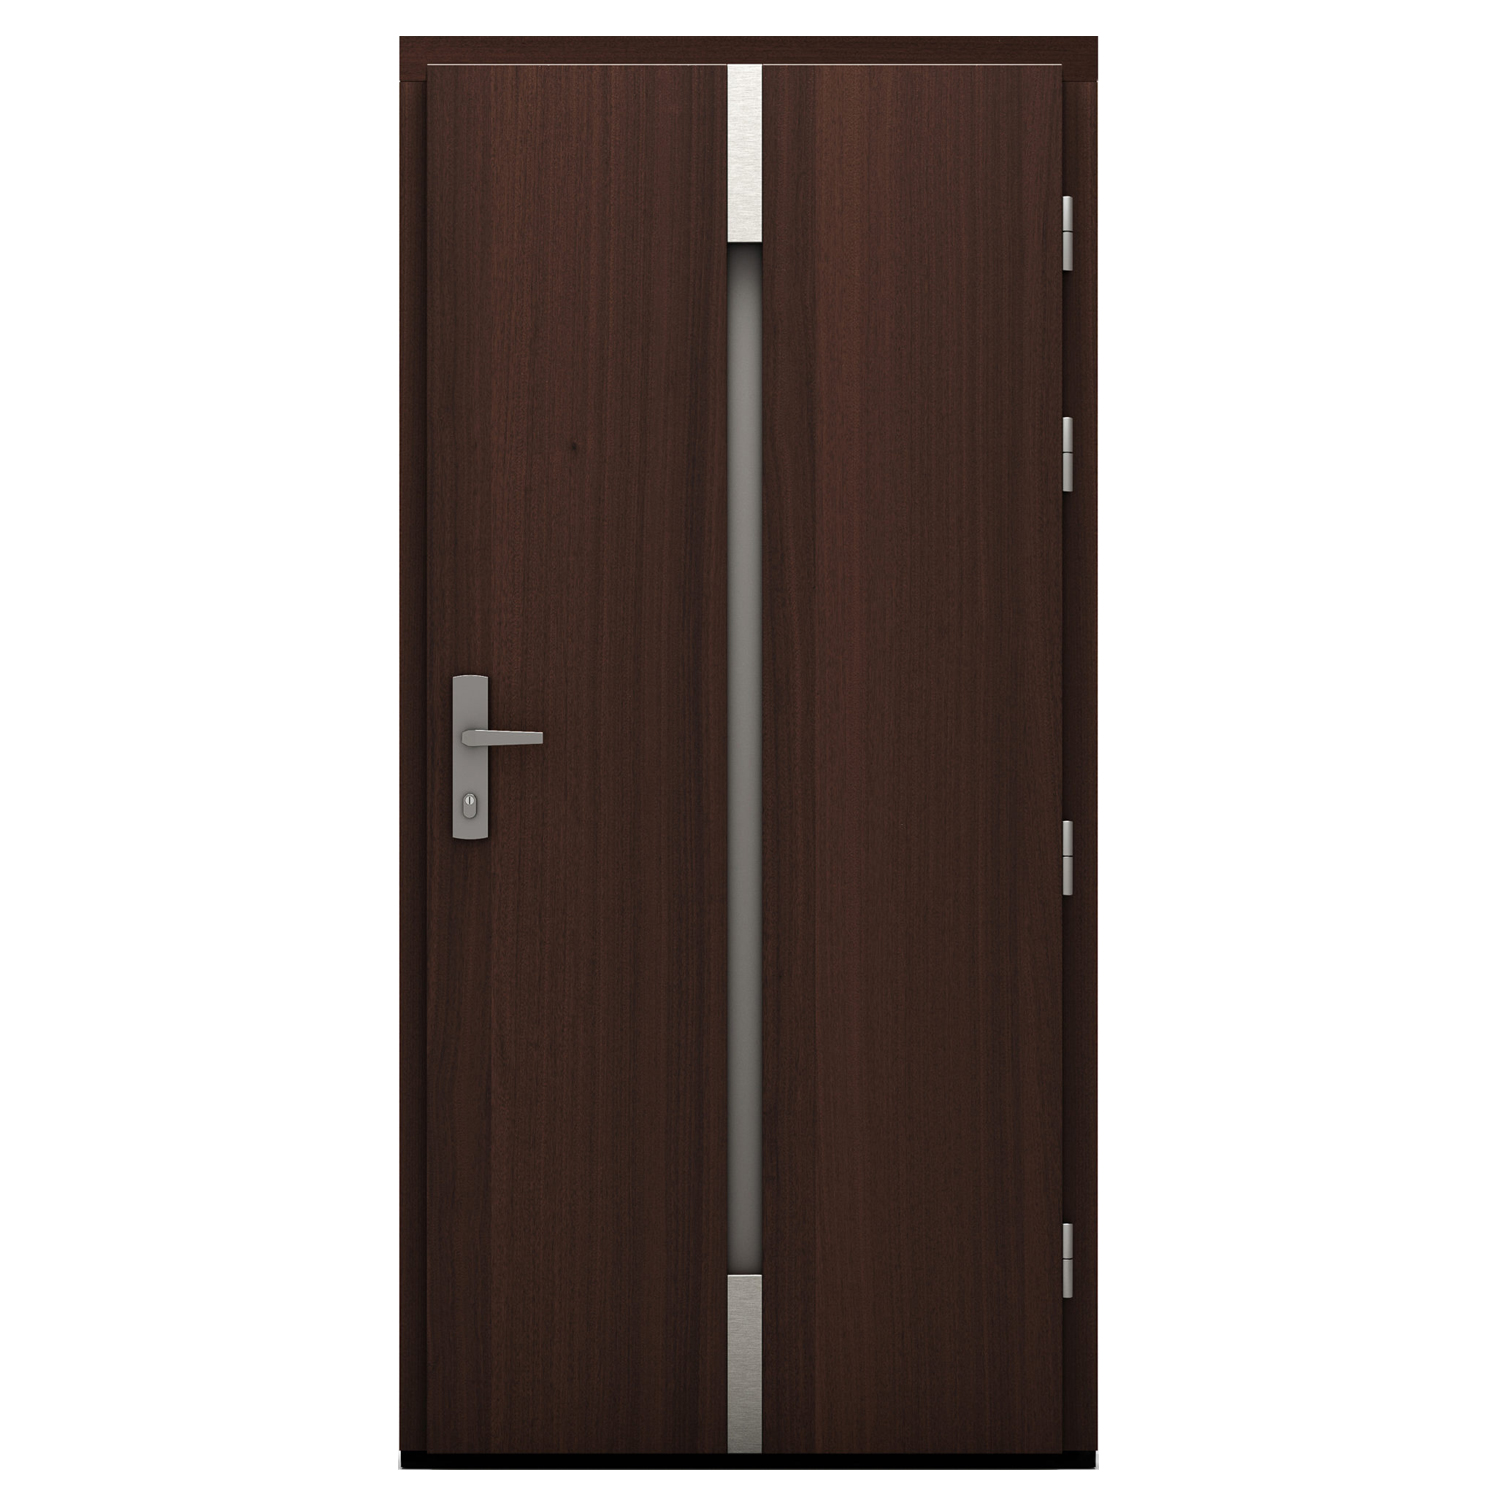 Drzwi zewnętrzne drewniane płytowe CAL Zyndram kolekcja Rycerska